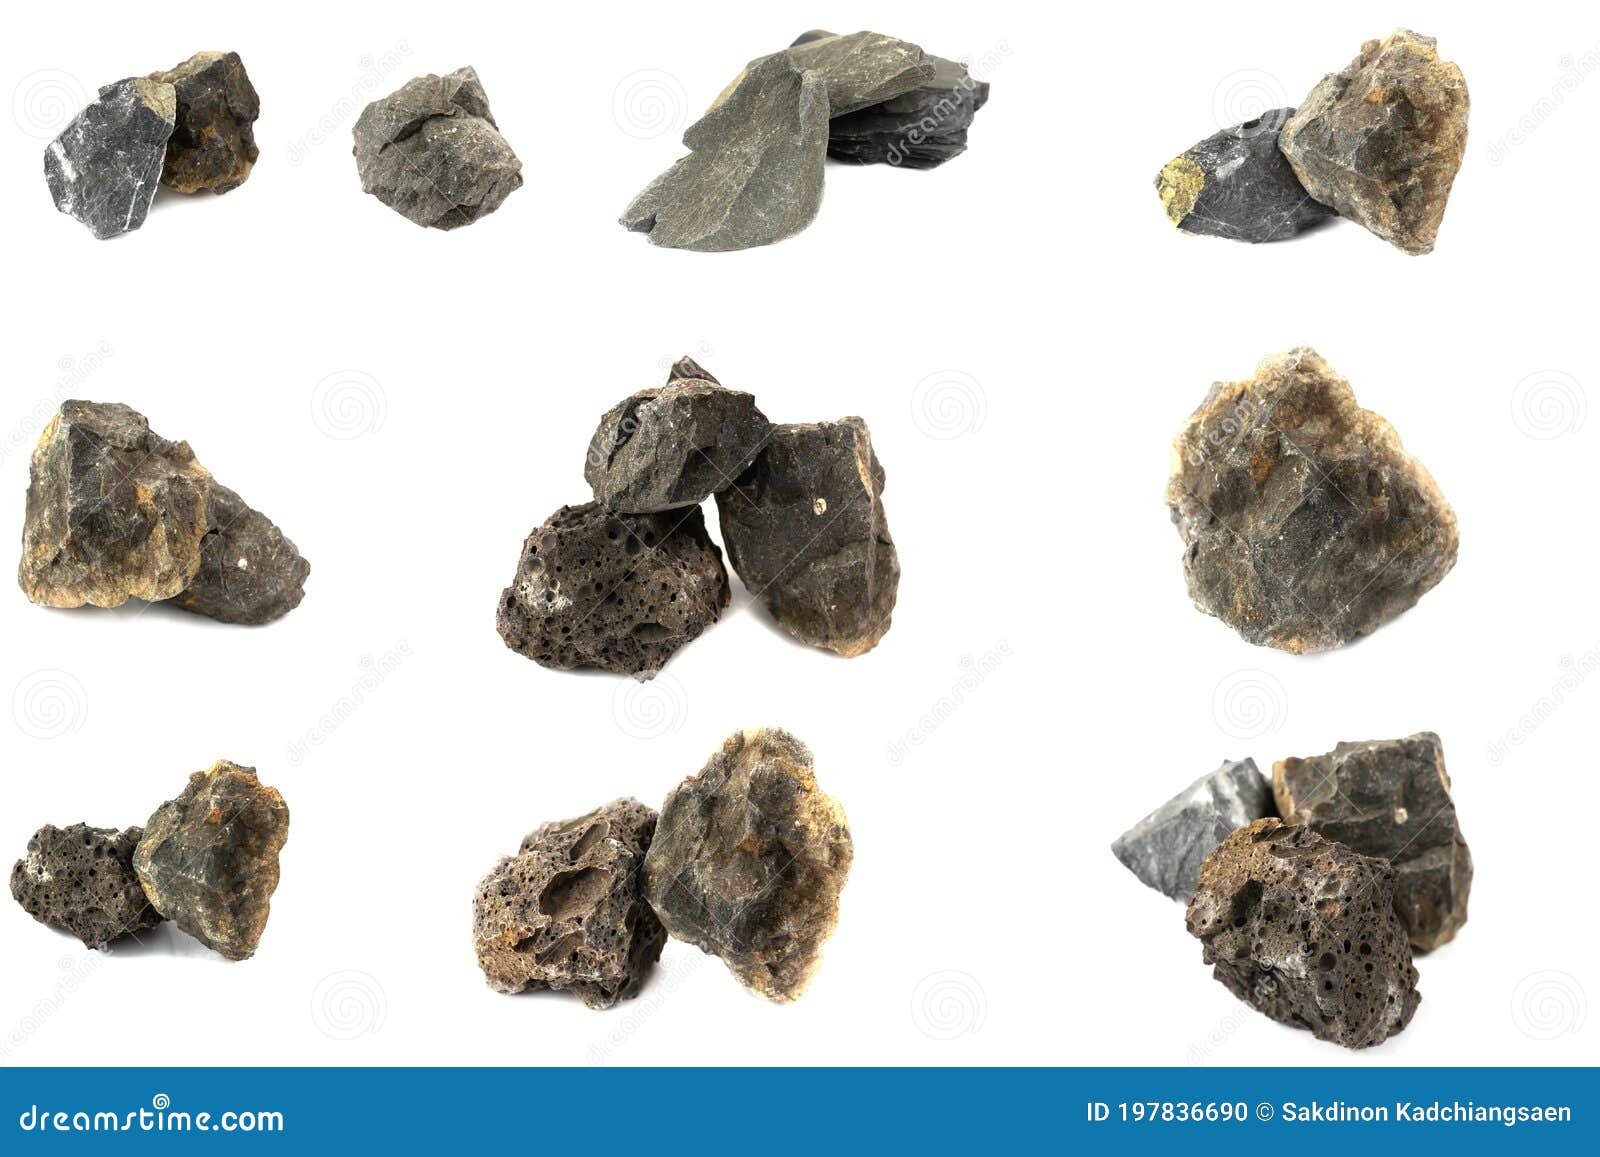 Madeliefje vochtigheid Salie Basalt Rock Met Slate Rock En Graniet Voor Industrieën Stock Foto - Image  of bazalt, mineralen: 197836690